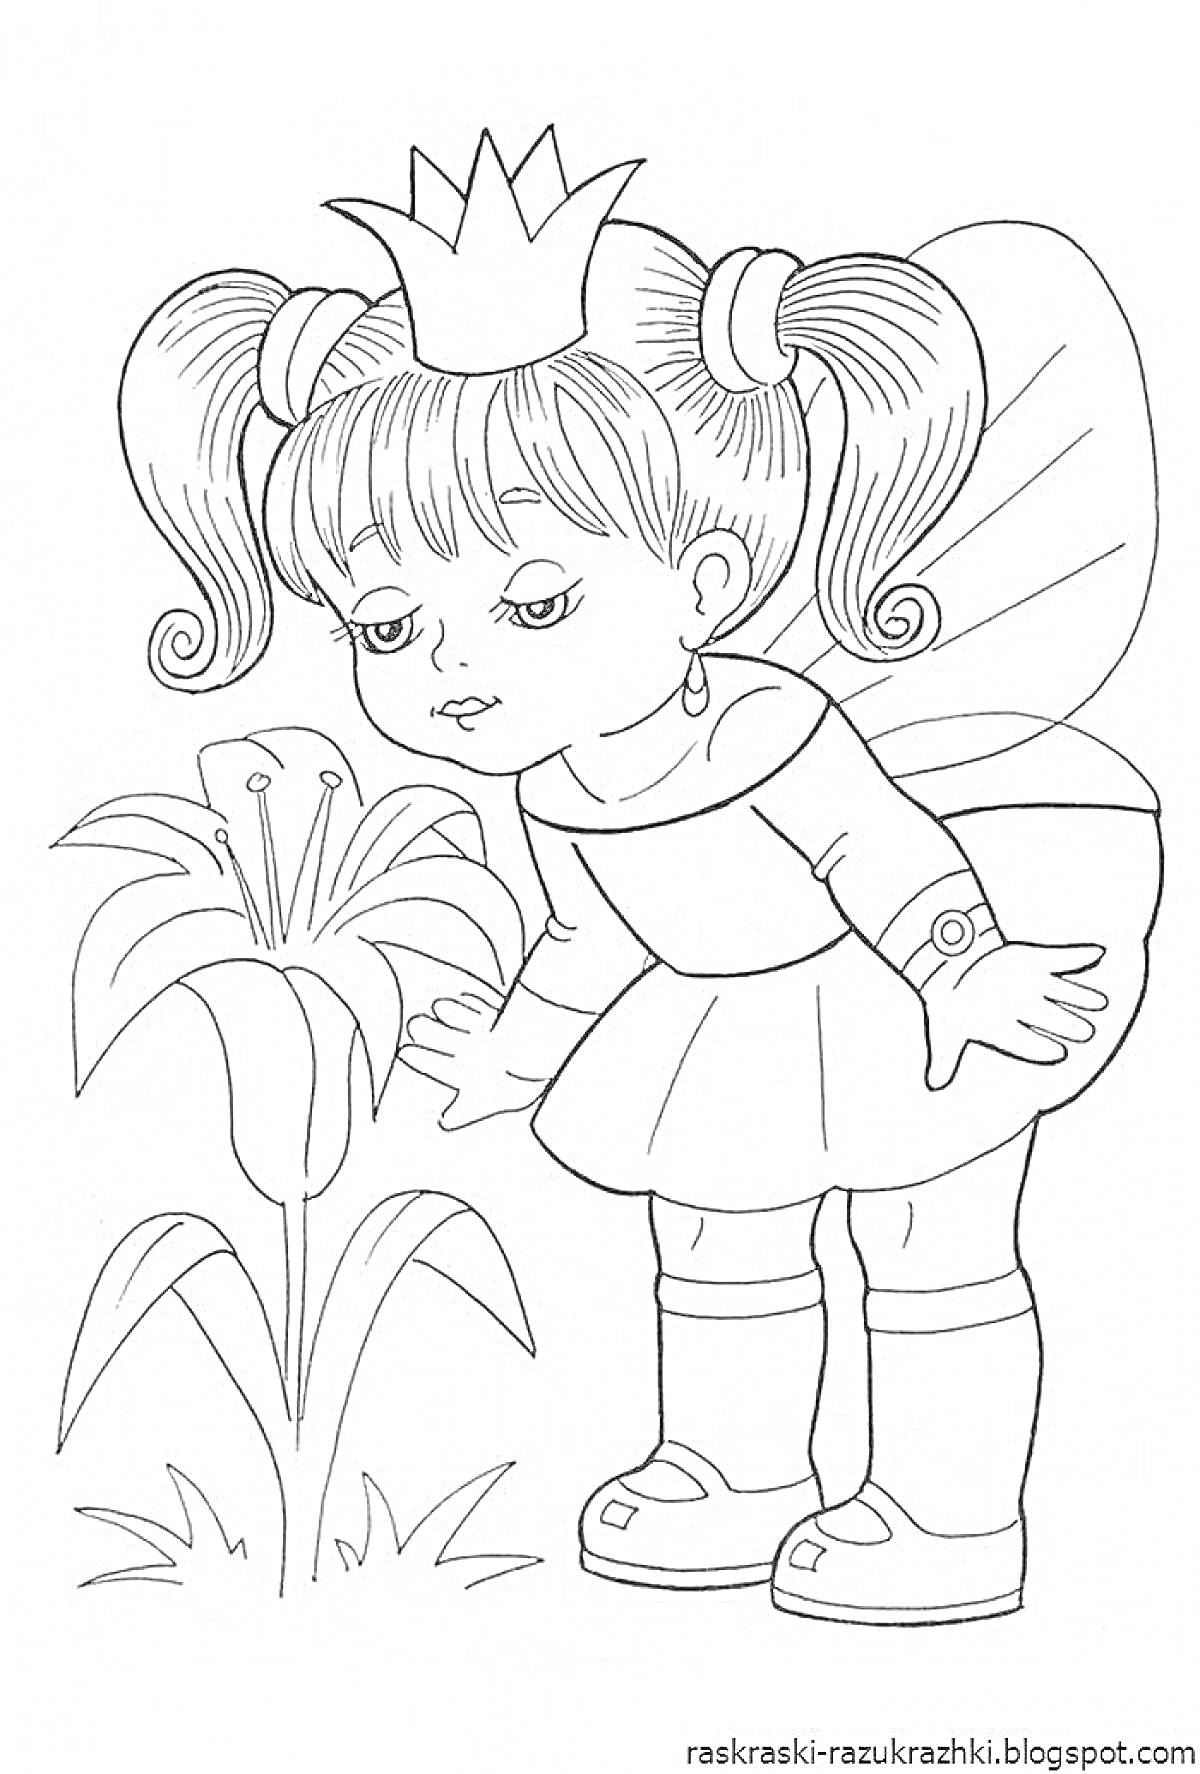 Раскраска Девочка принцесса с короной на голове и кукла в руках, рассматривает цветок лилии